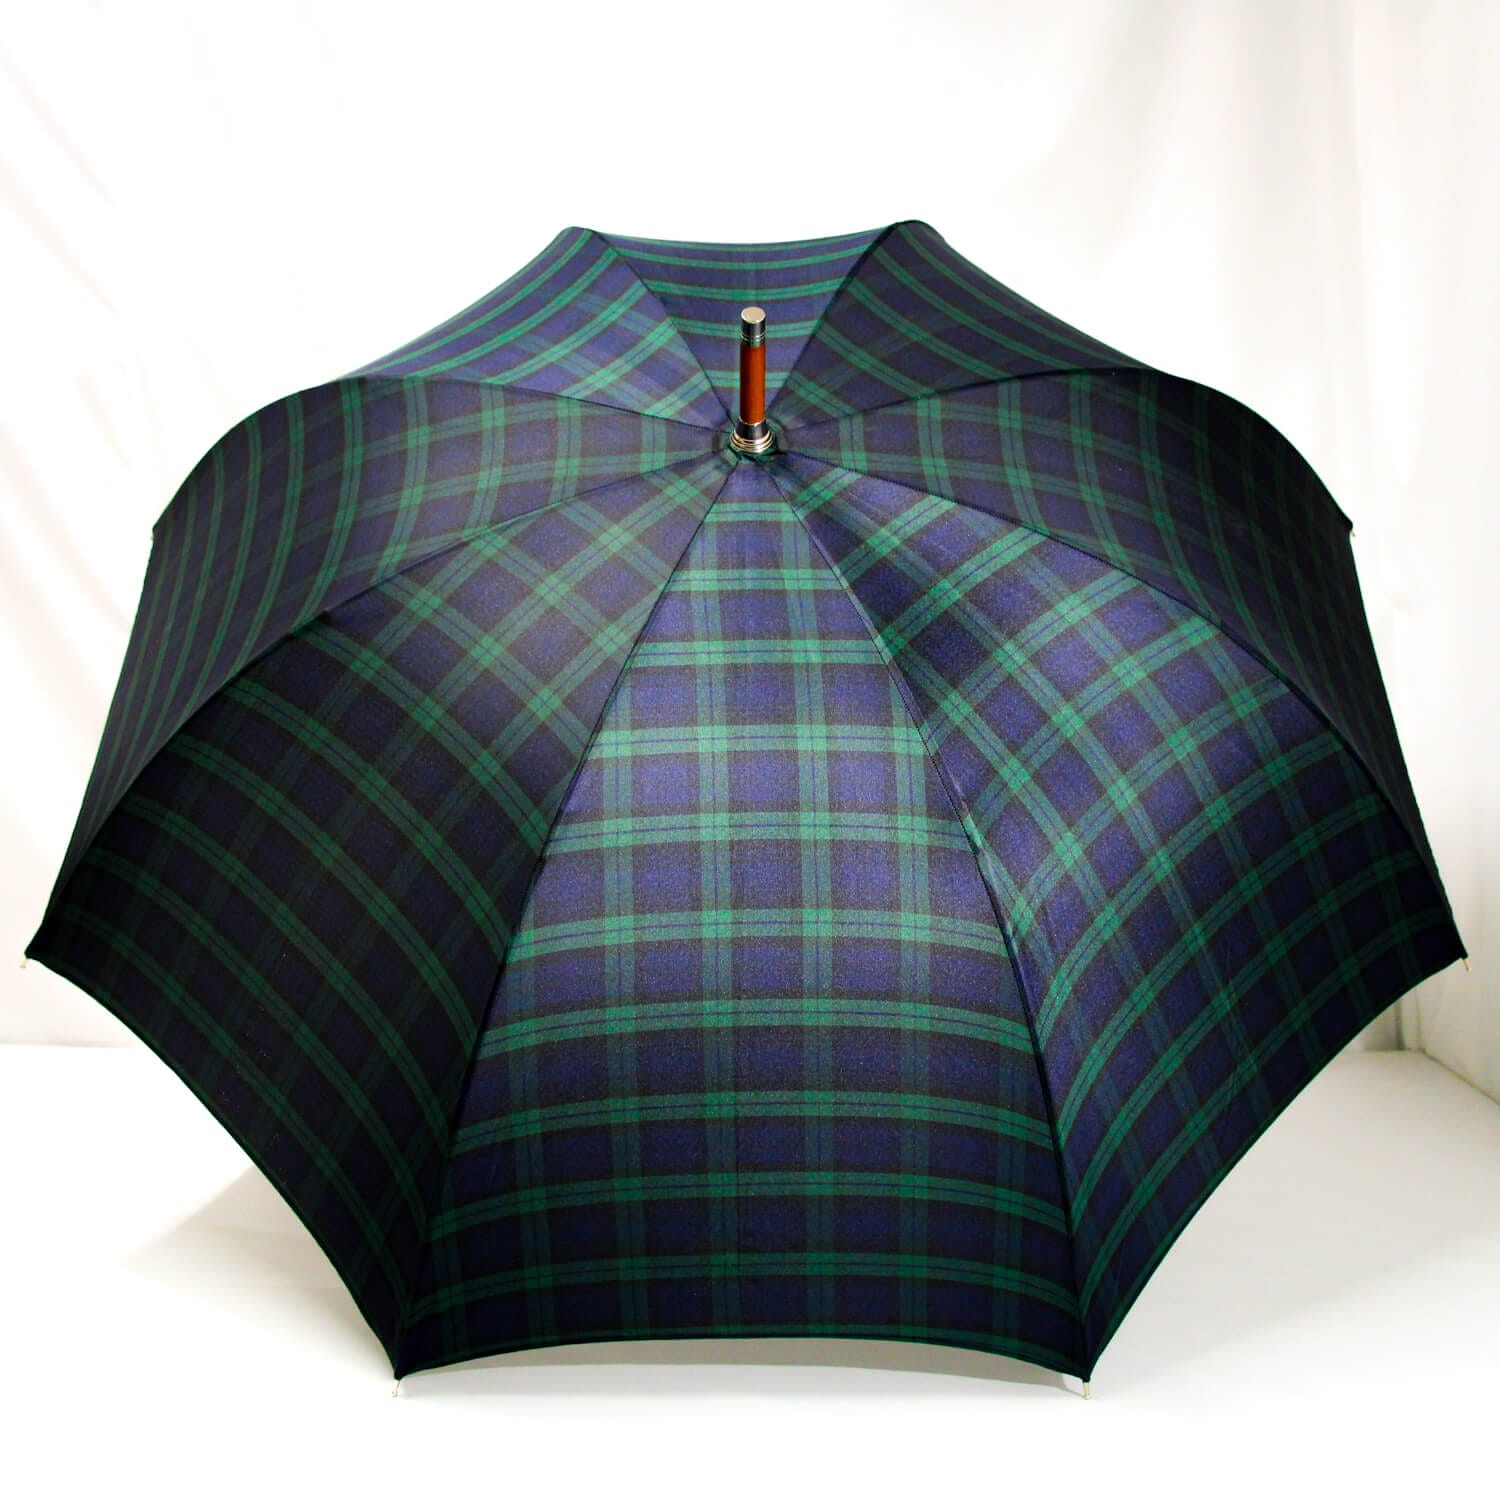 Grand parapluie écossais vert et bleu